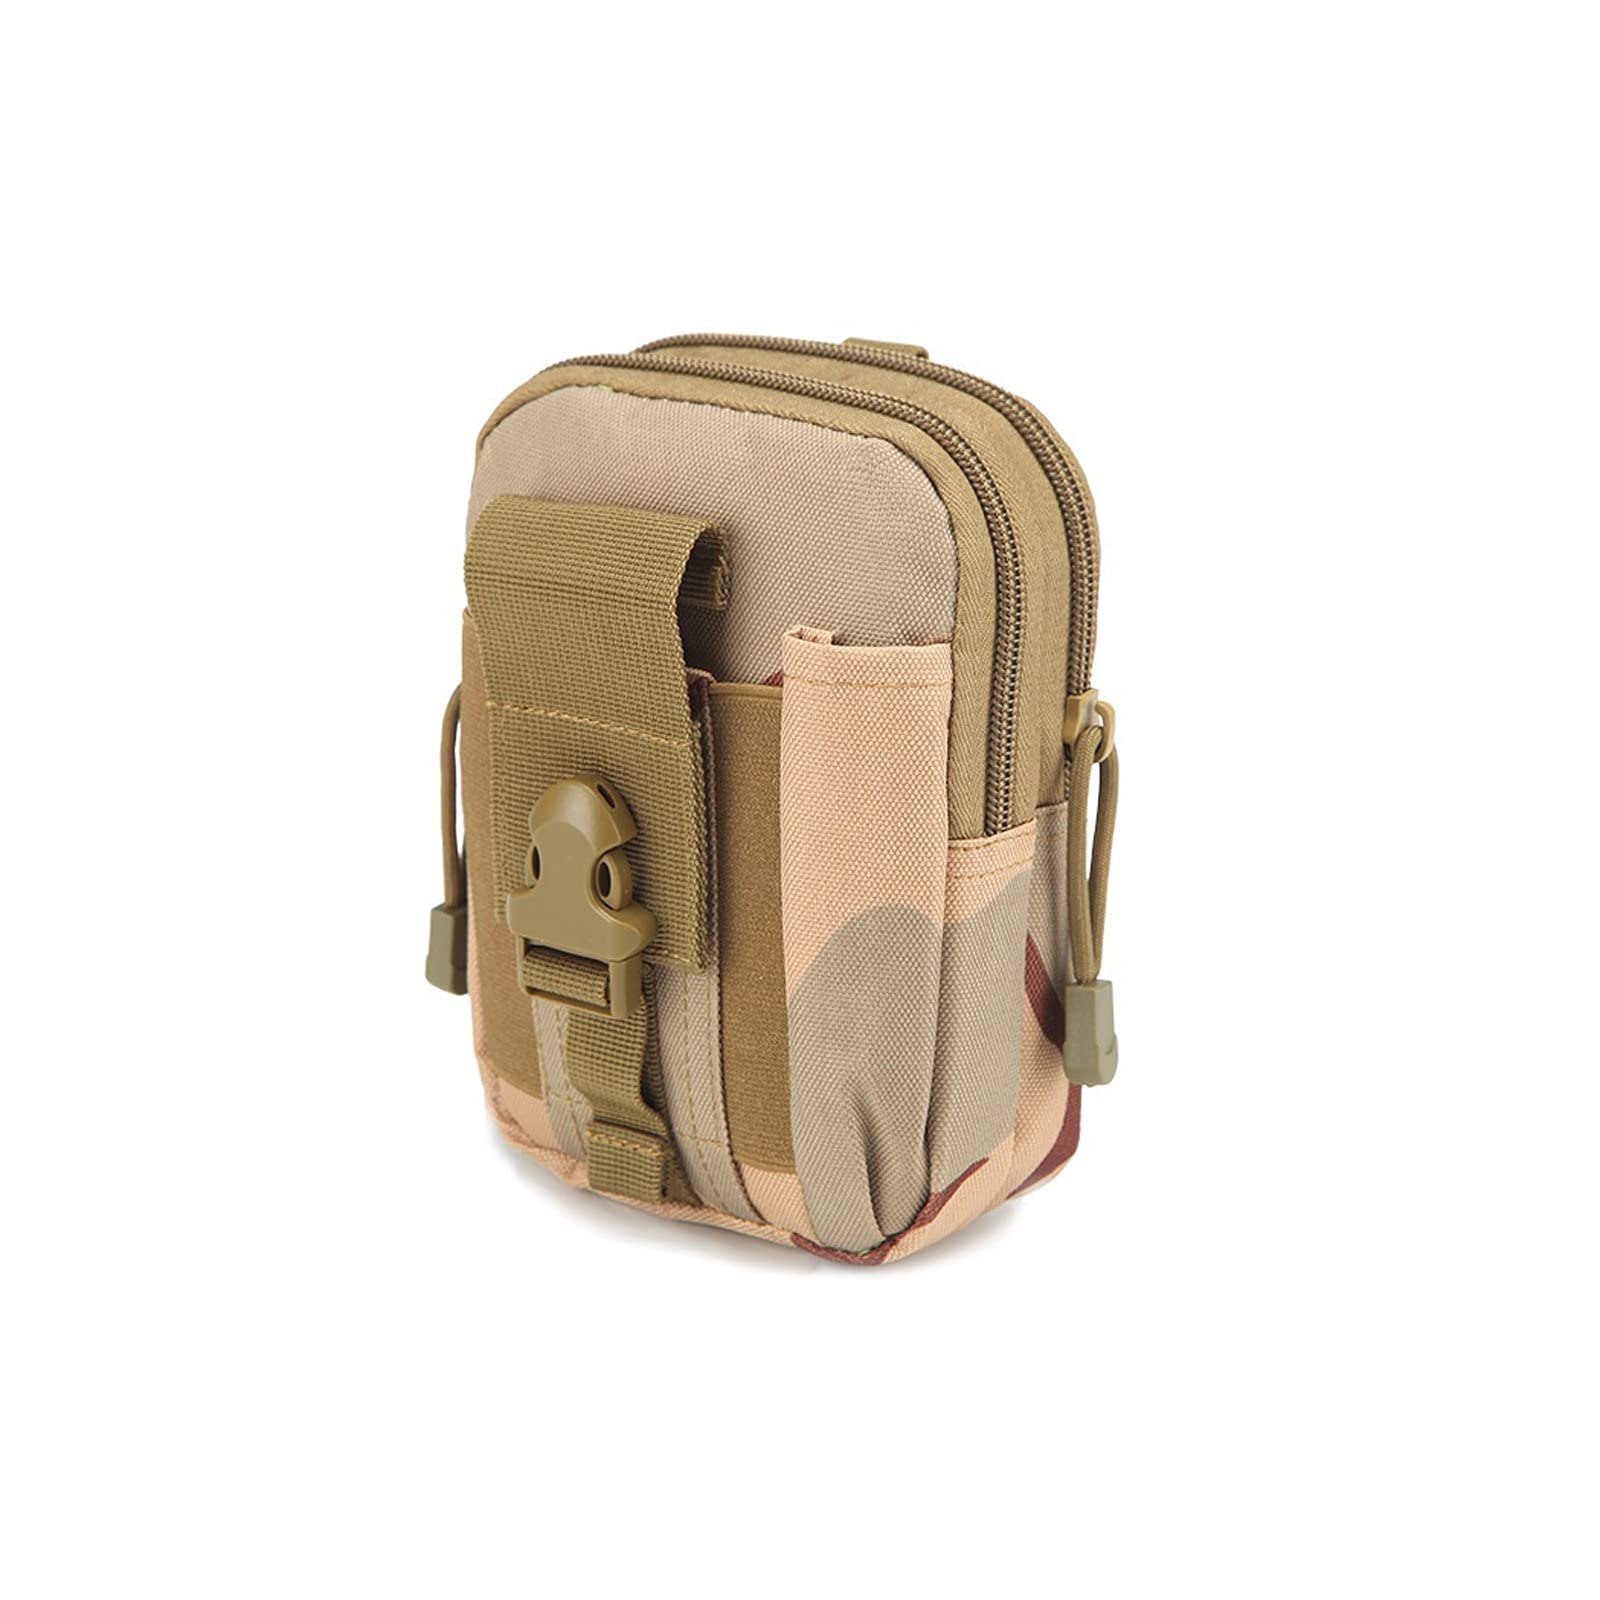 送料無料ZTRADA Waist Pack Men Outdoor Tactical Pouch Belt Waist Pack Bag Small Pocket Military Waist Pack Running Pouch